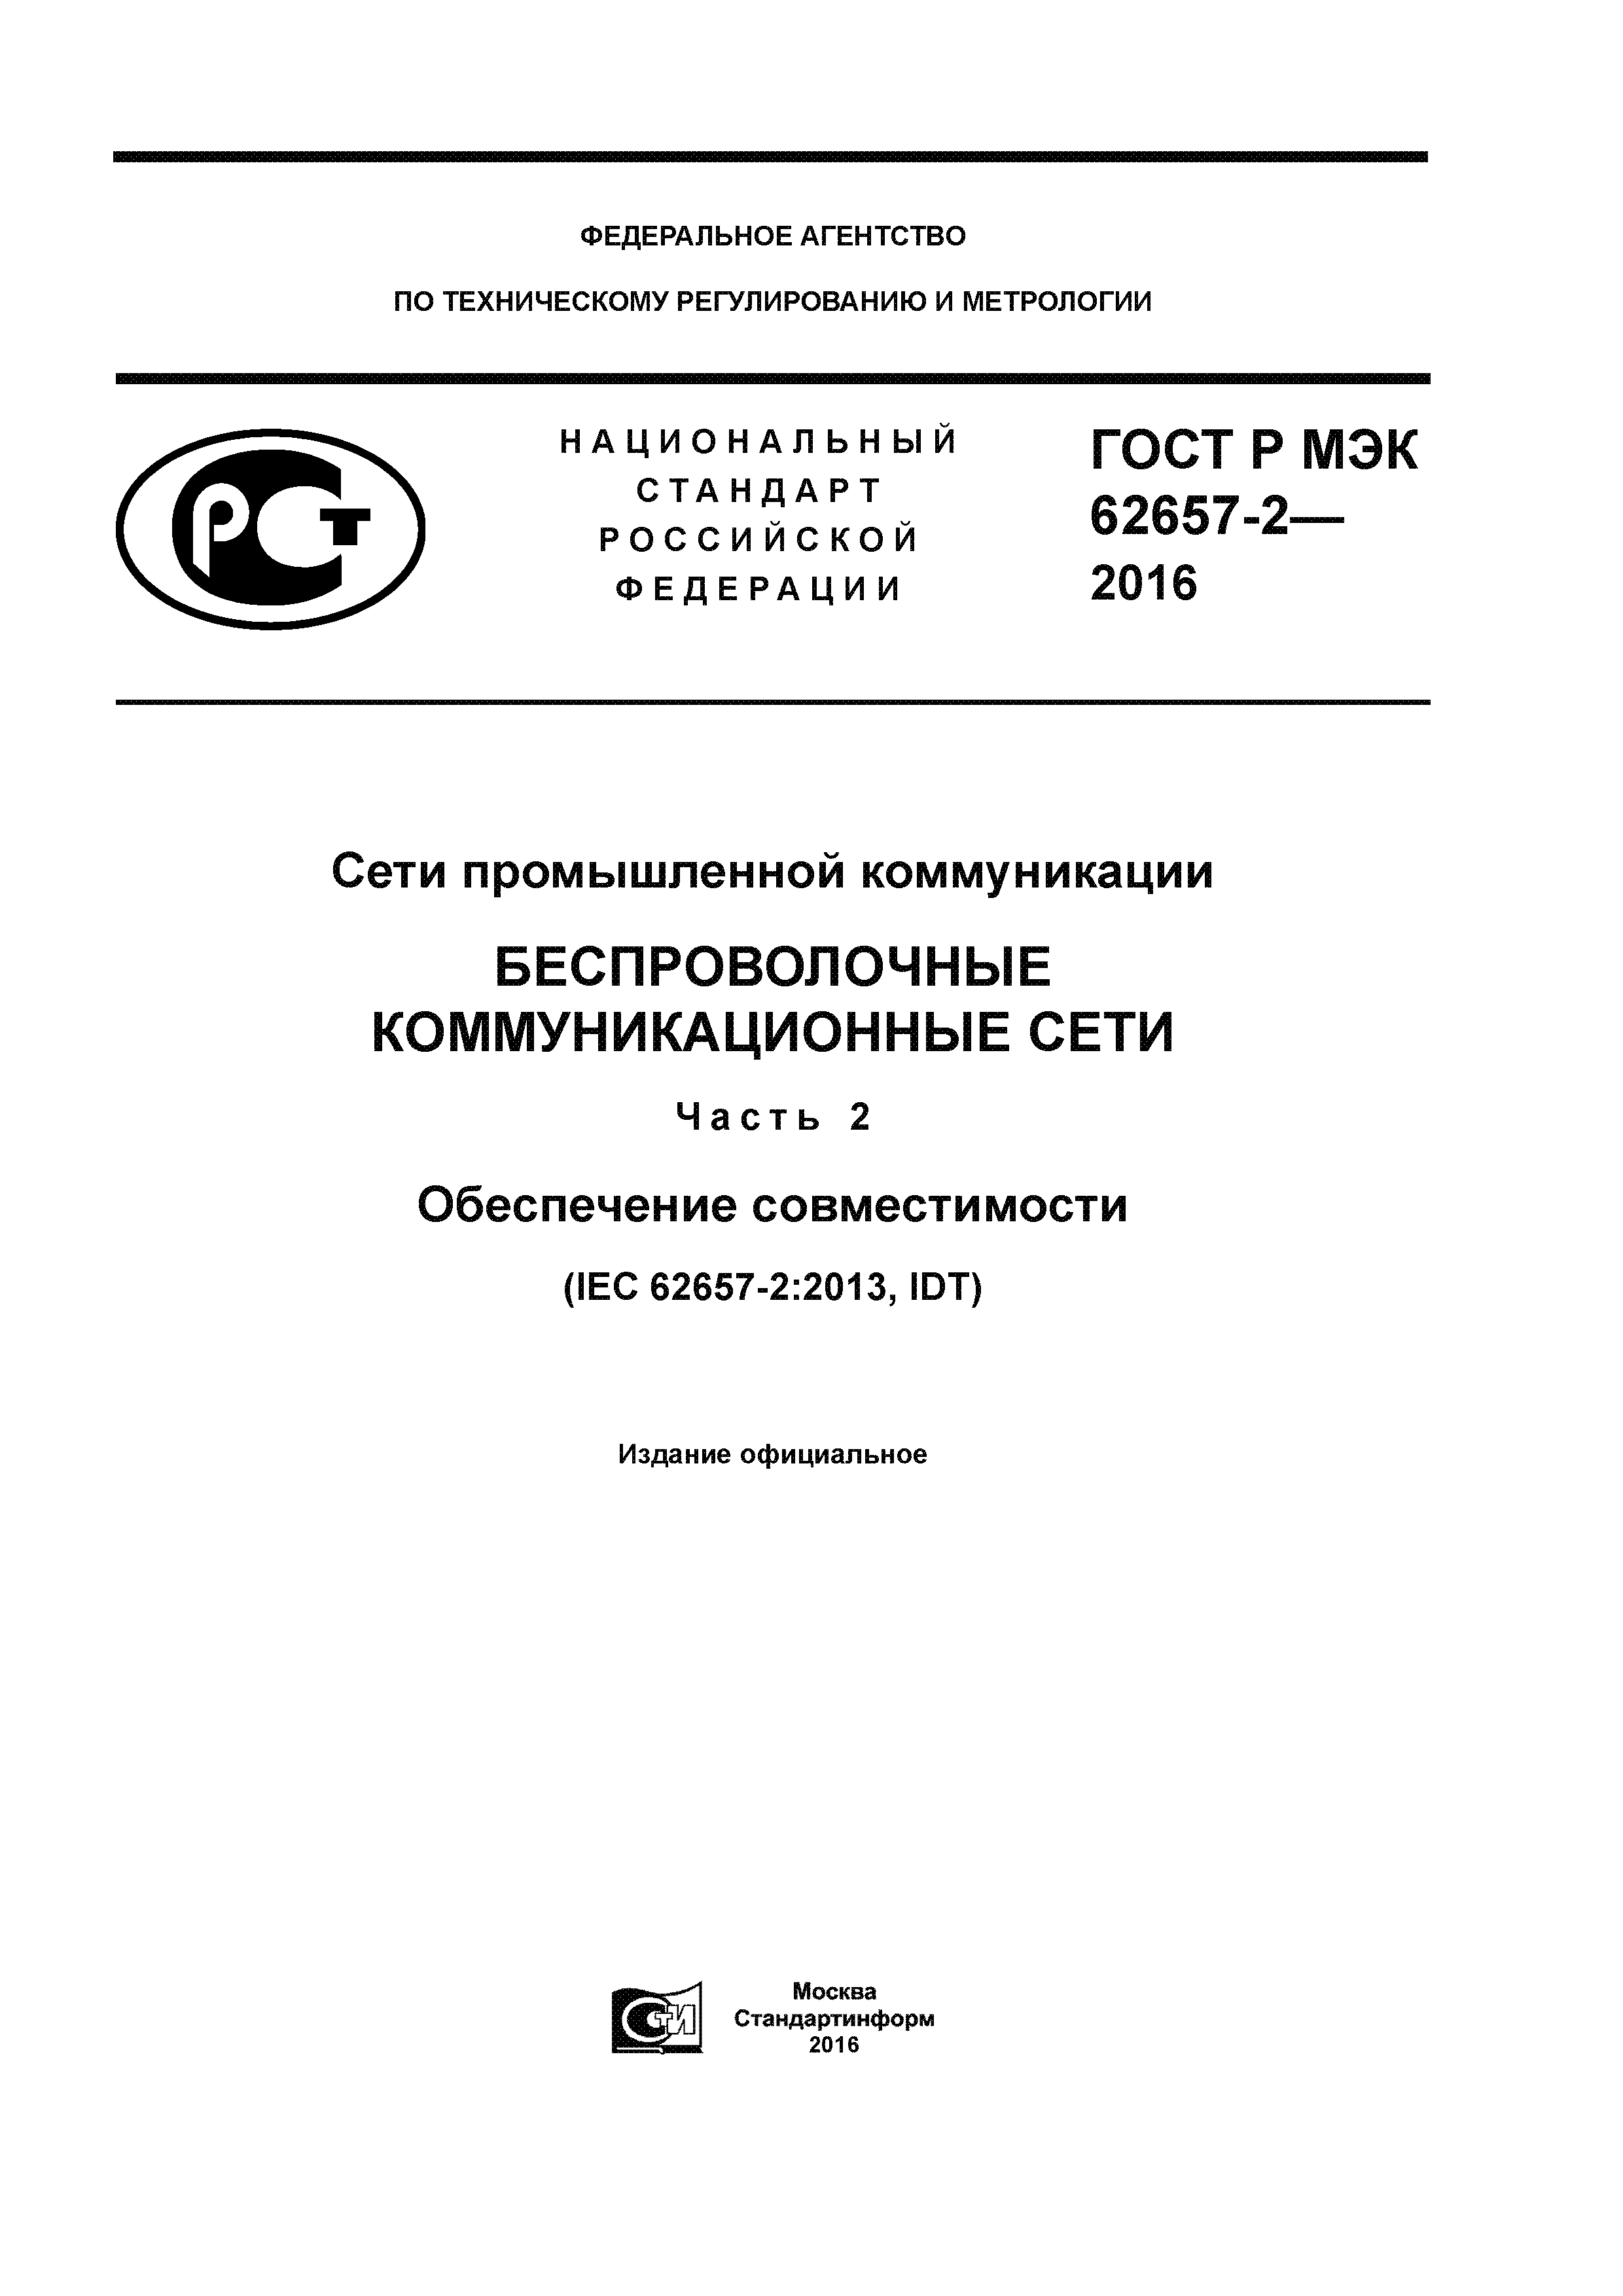 ГОСТ Р МЭК 62657-2-2016